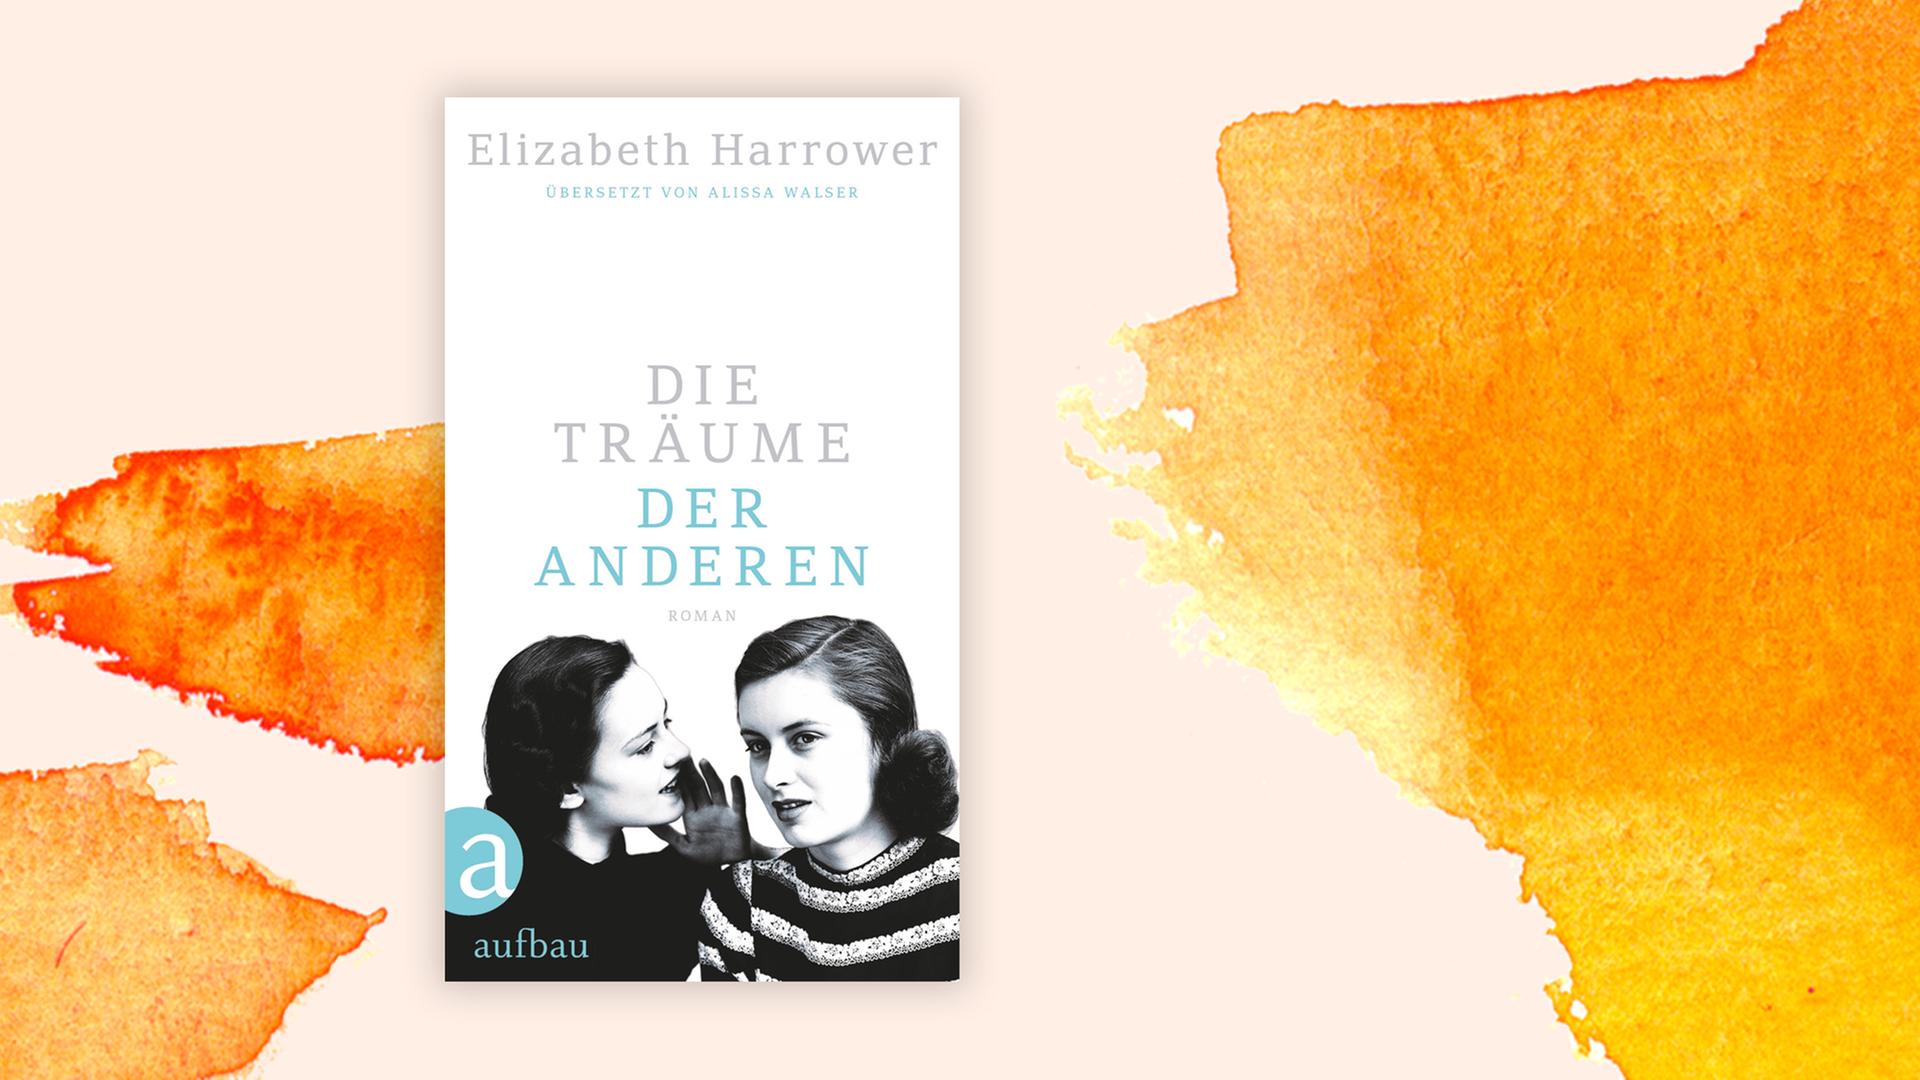 Zwei junge Frauen auf dem Buch-Cover von "Die Träume der anderen" der Autorin Elisabeth Harrower.